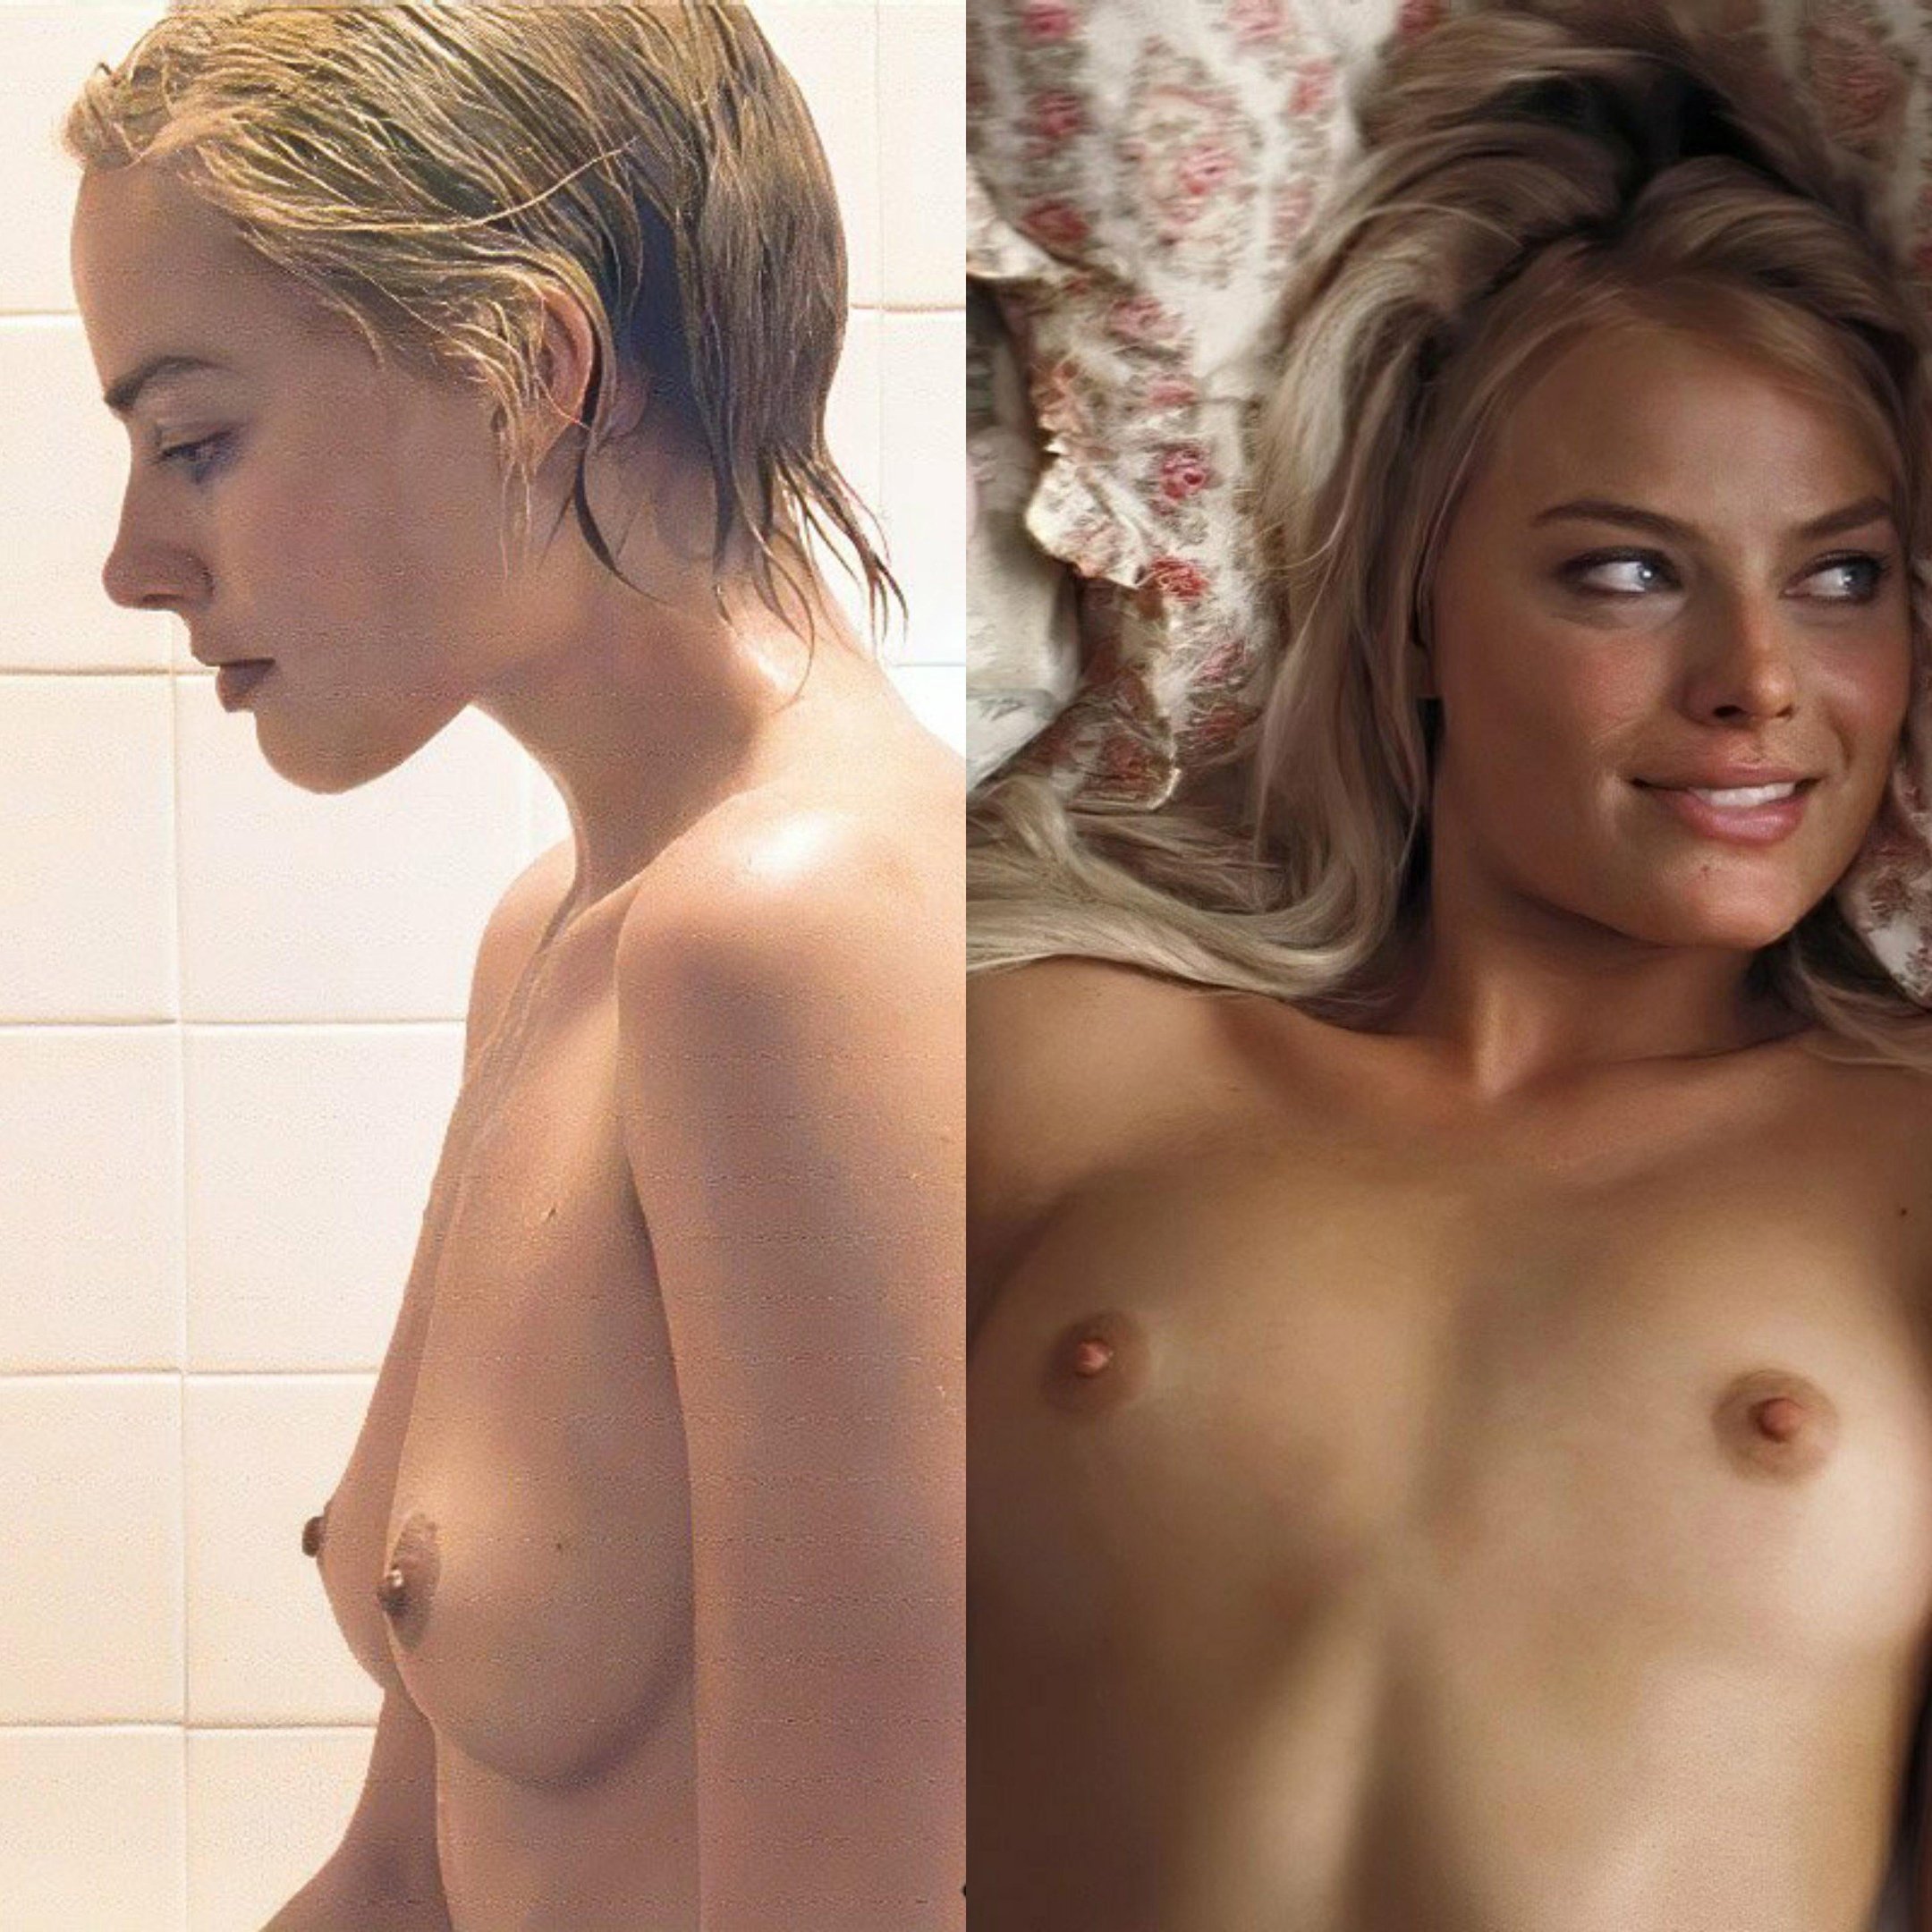 Margot.robbie nudes